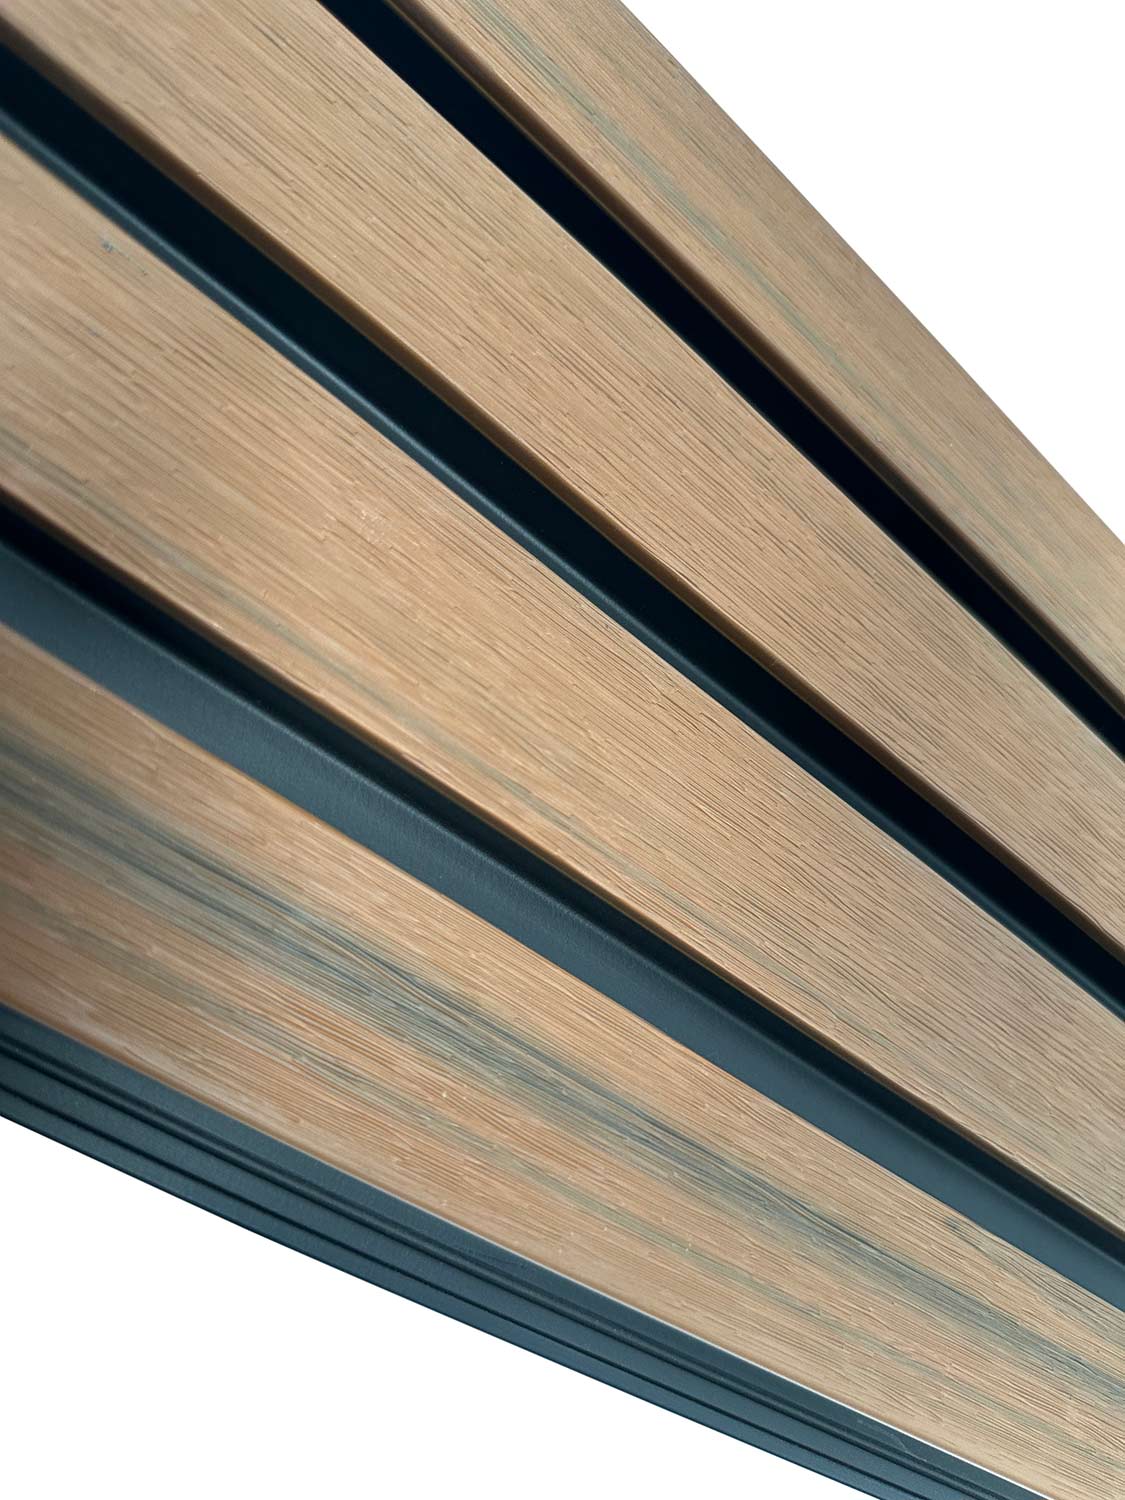 exterior wood slats